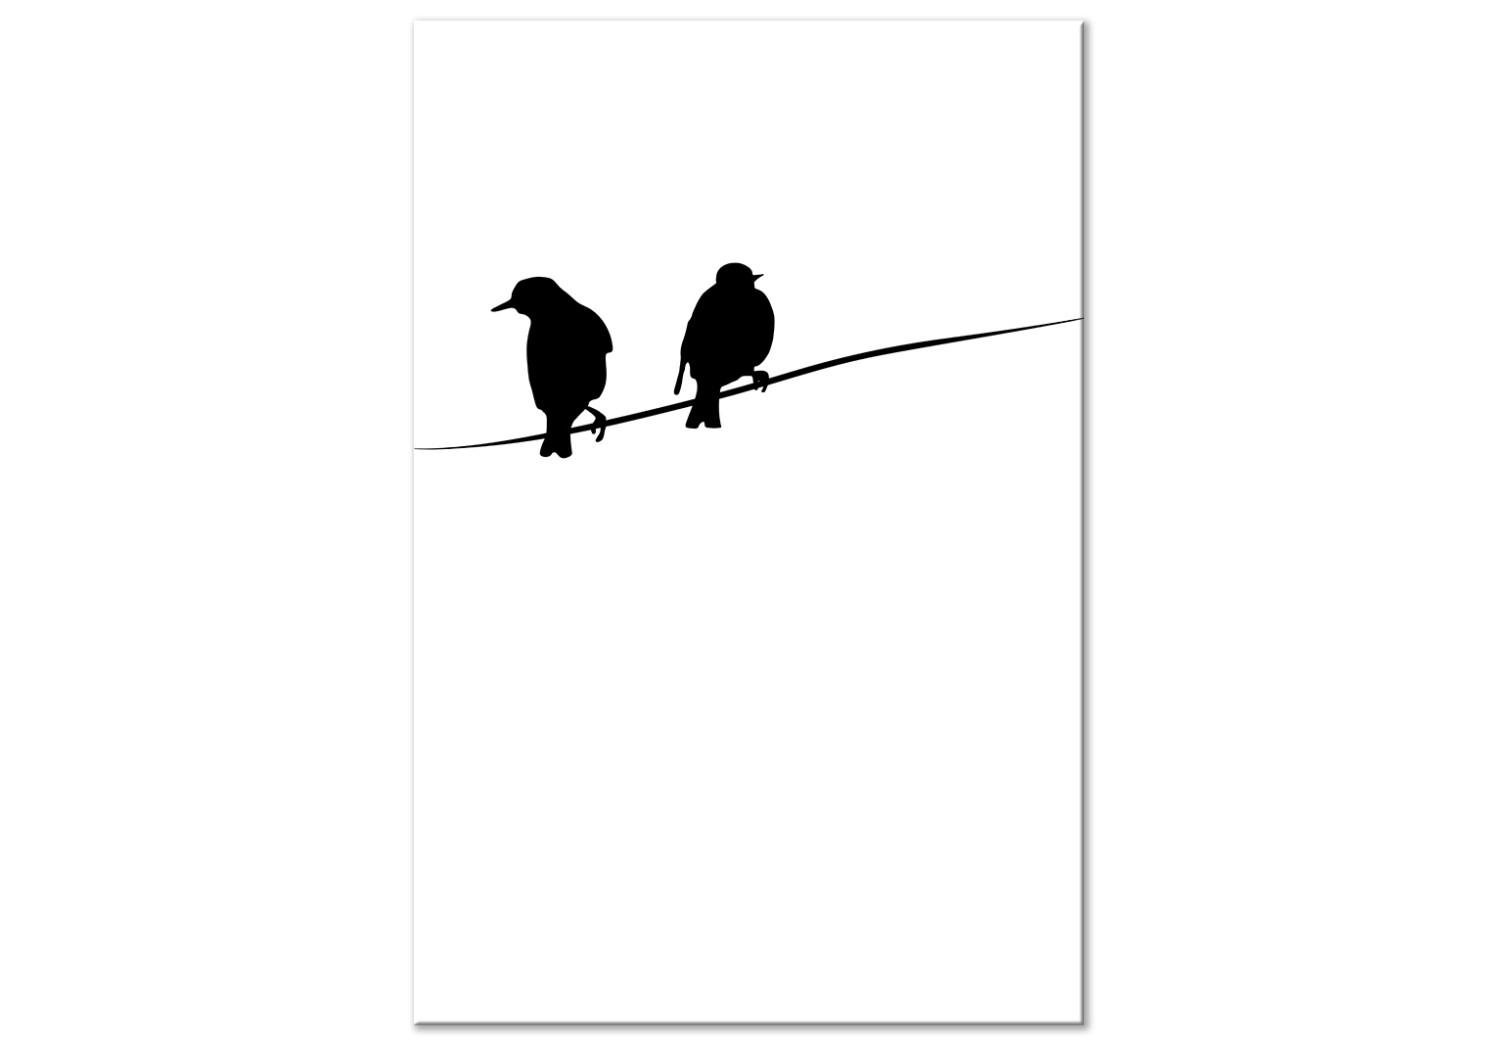 Cuadro moderno Conversaciones de pájaros (1 pieza) - animales blanco y negro